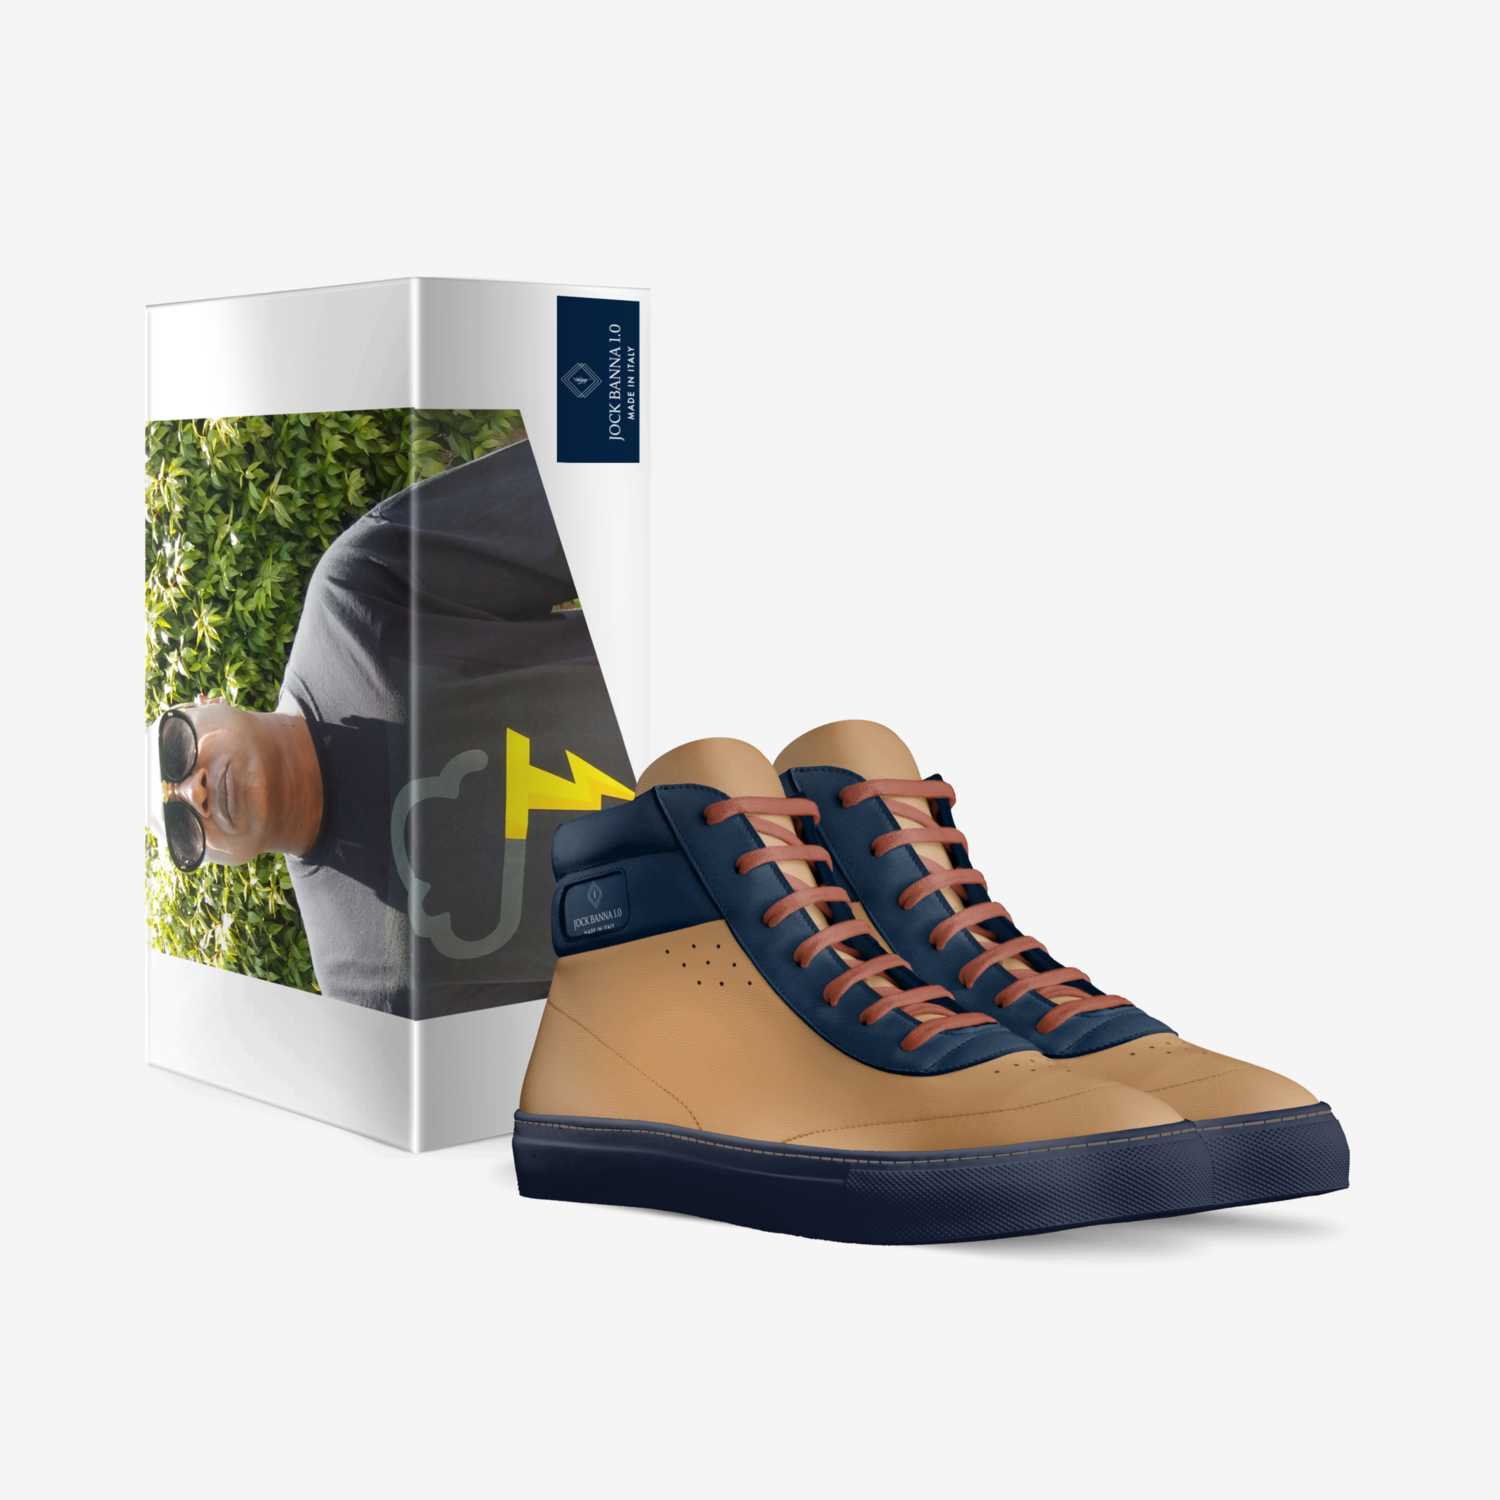 JOCK BANNA 1.0 custom made in Italy shoes by Martin Hendrick | Box view